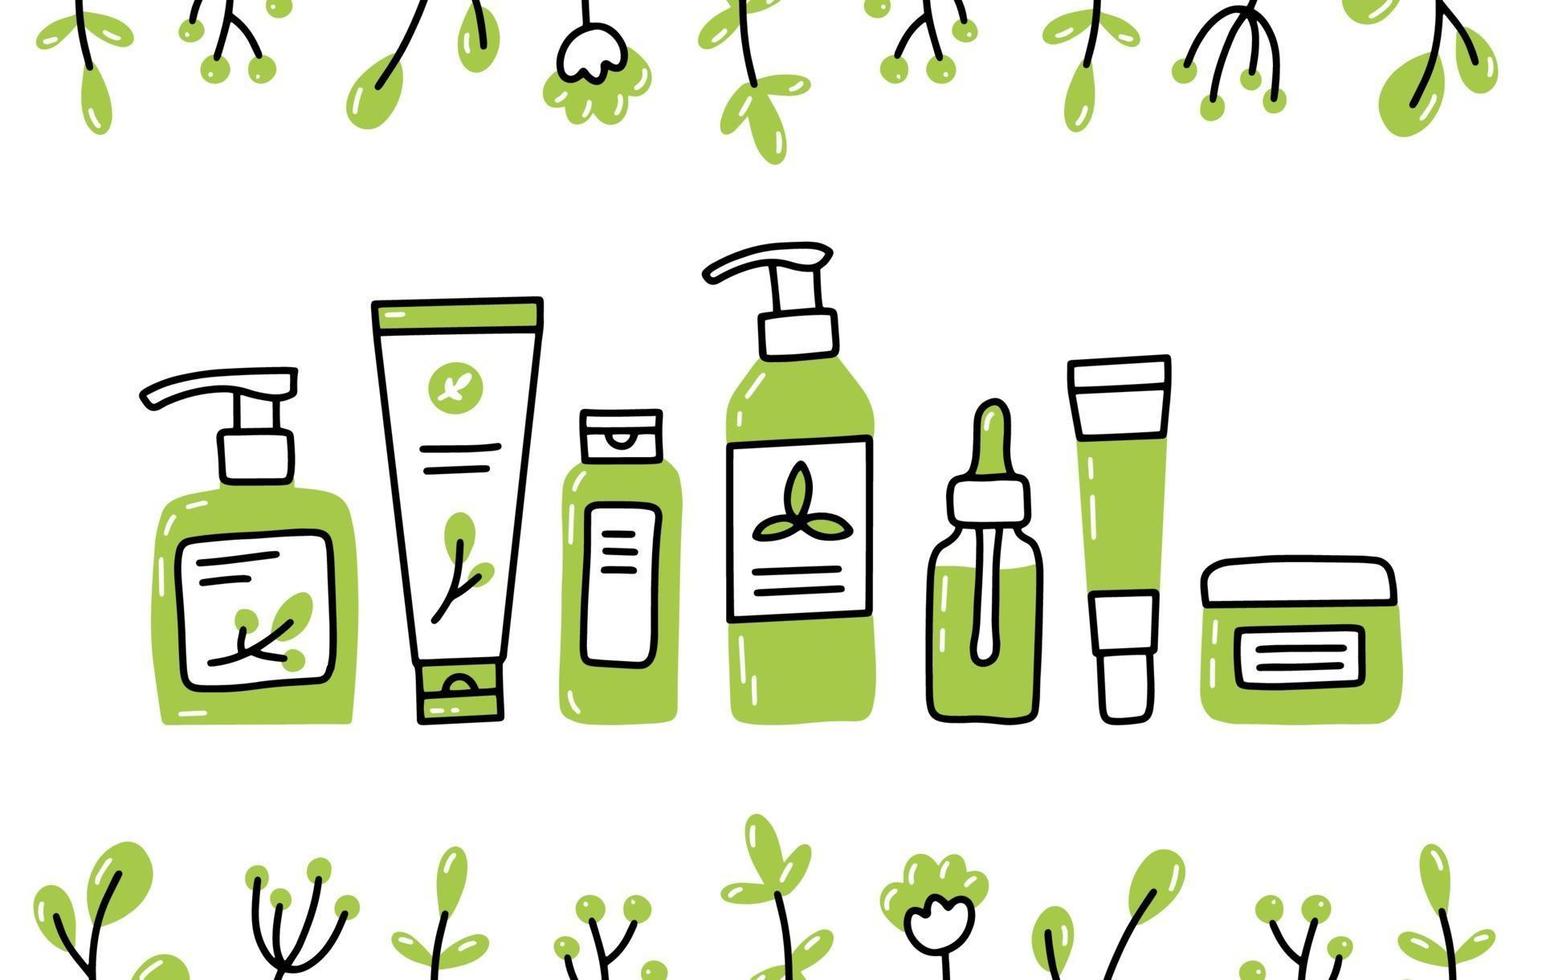 cosméticos orgânicos naturais ecológicos definidos em estilo doodle vetor